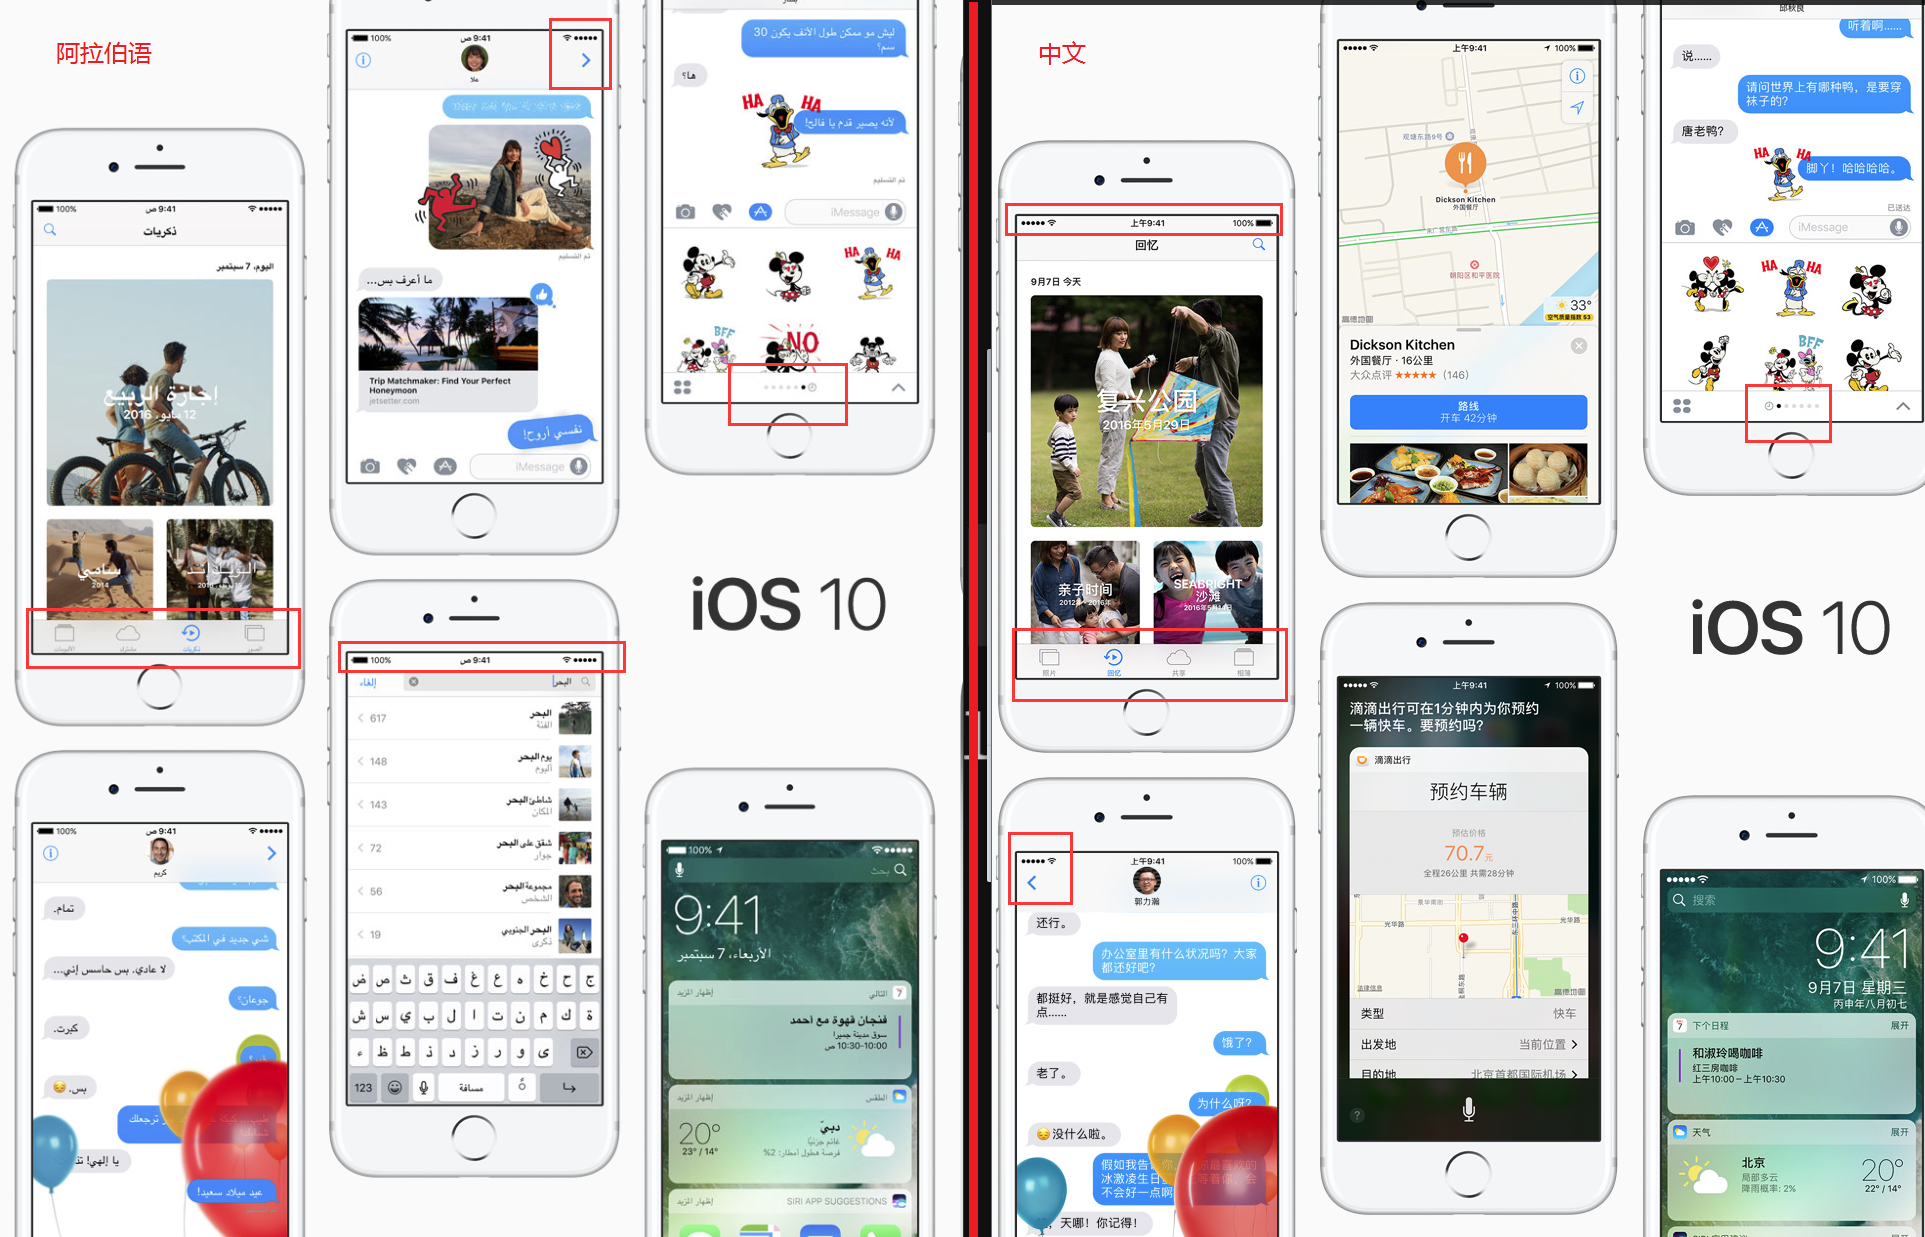 阿拉伯语与中文的 iOS 10 介绍页面